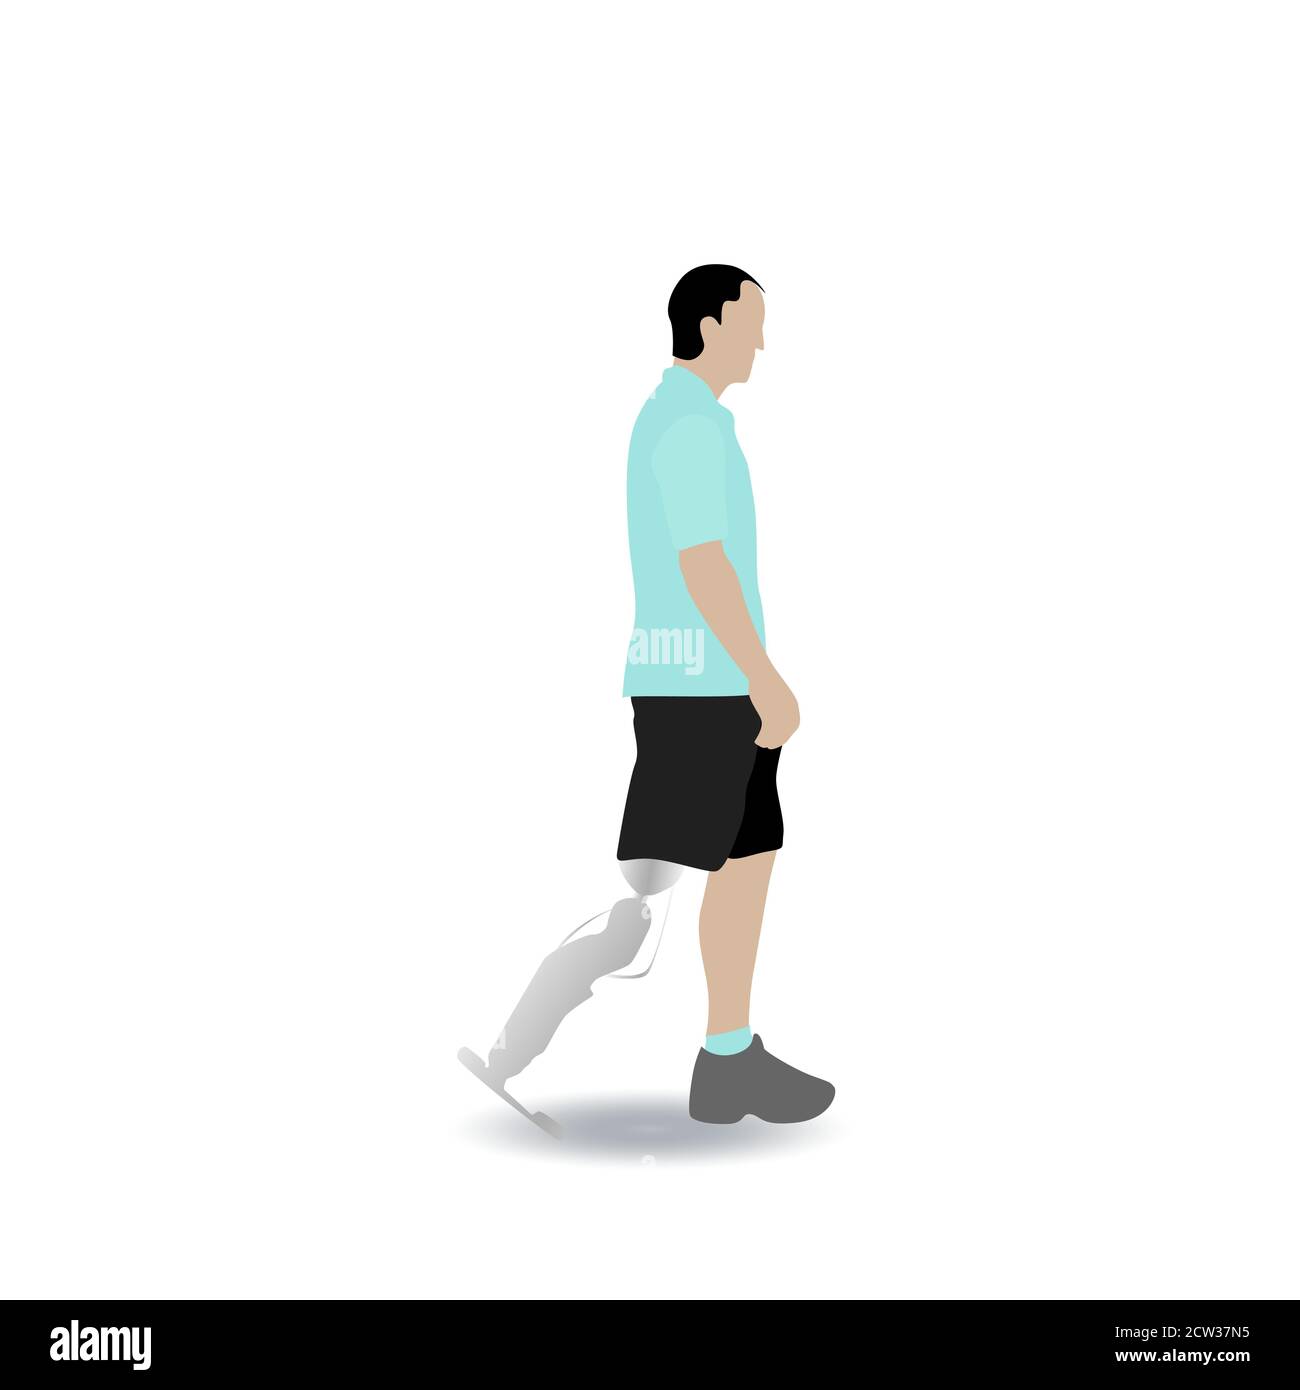 Uomo con gamba protesis camminando isolato su sfondo bianco. Protesi arti inferiori, persone disabili, piedi artificiali protesici. Vettore a pieno titolo Illustrazione Vettoriale